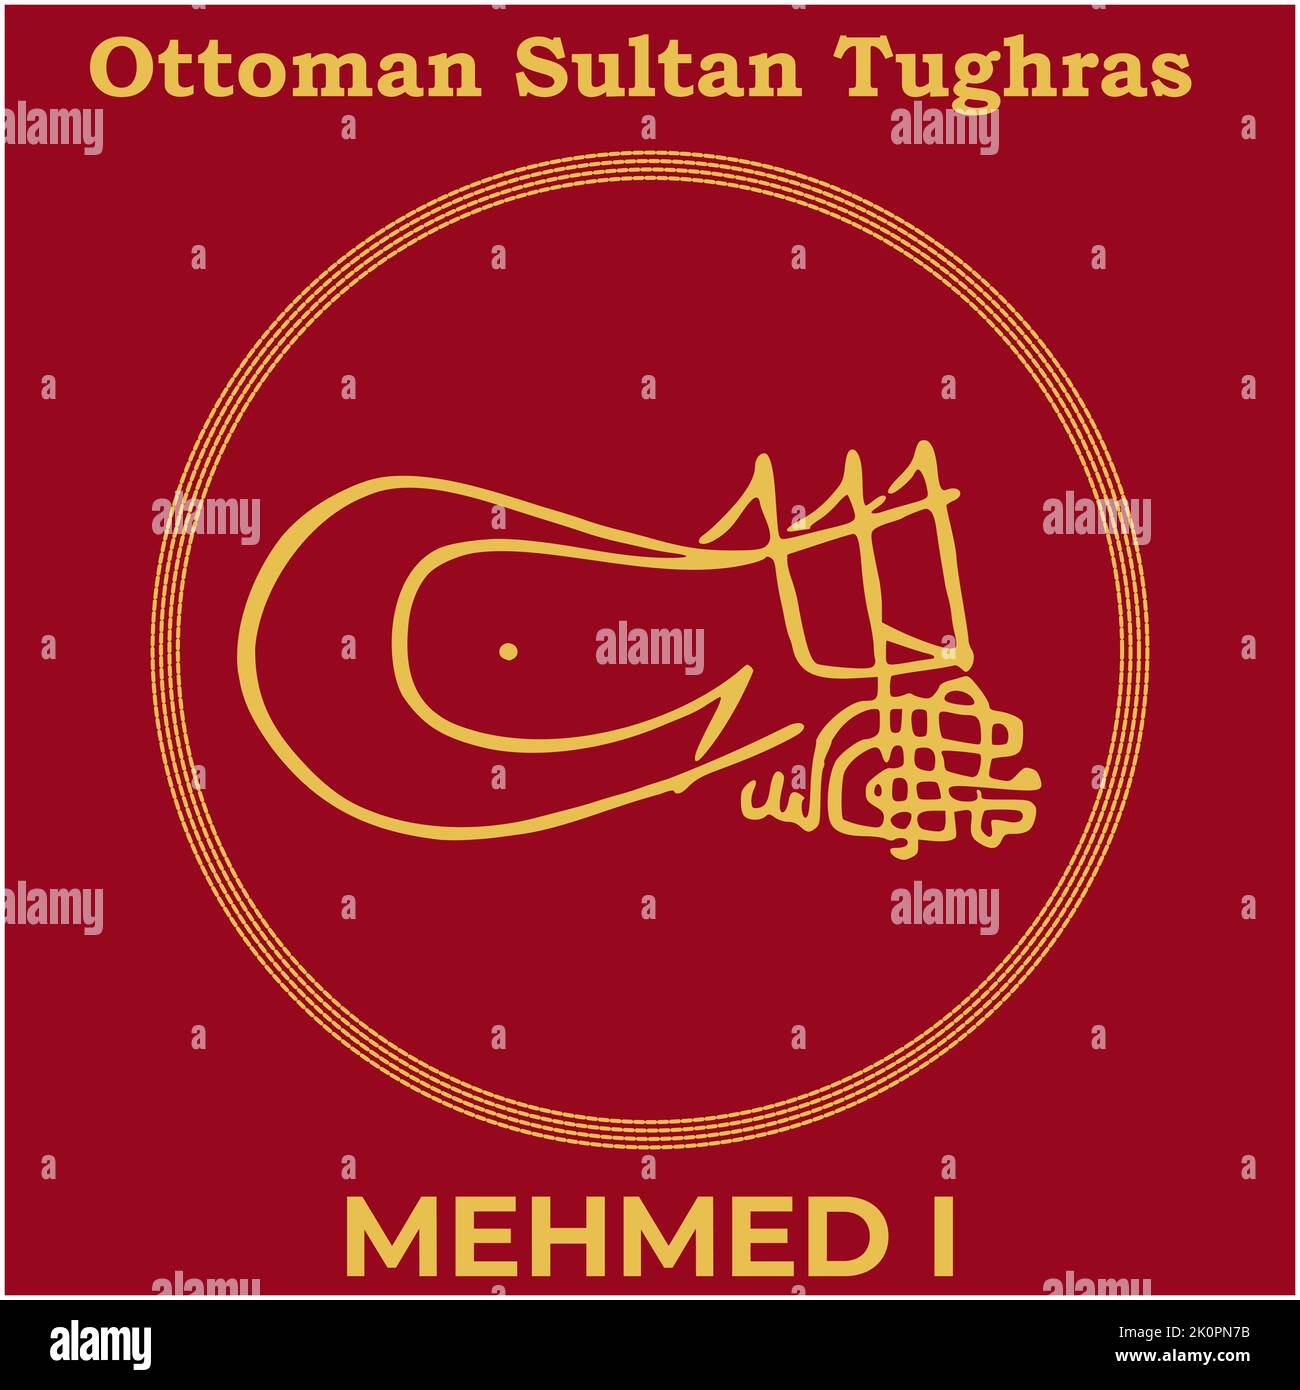 Immagine vettoriale con firma Tughra del quinto sultano ottomano Mehmed i, Tughra di Mehmed i con sfondo nero. Illustrazione Vettoriale